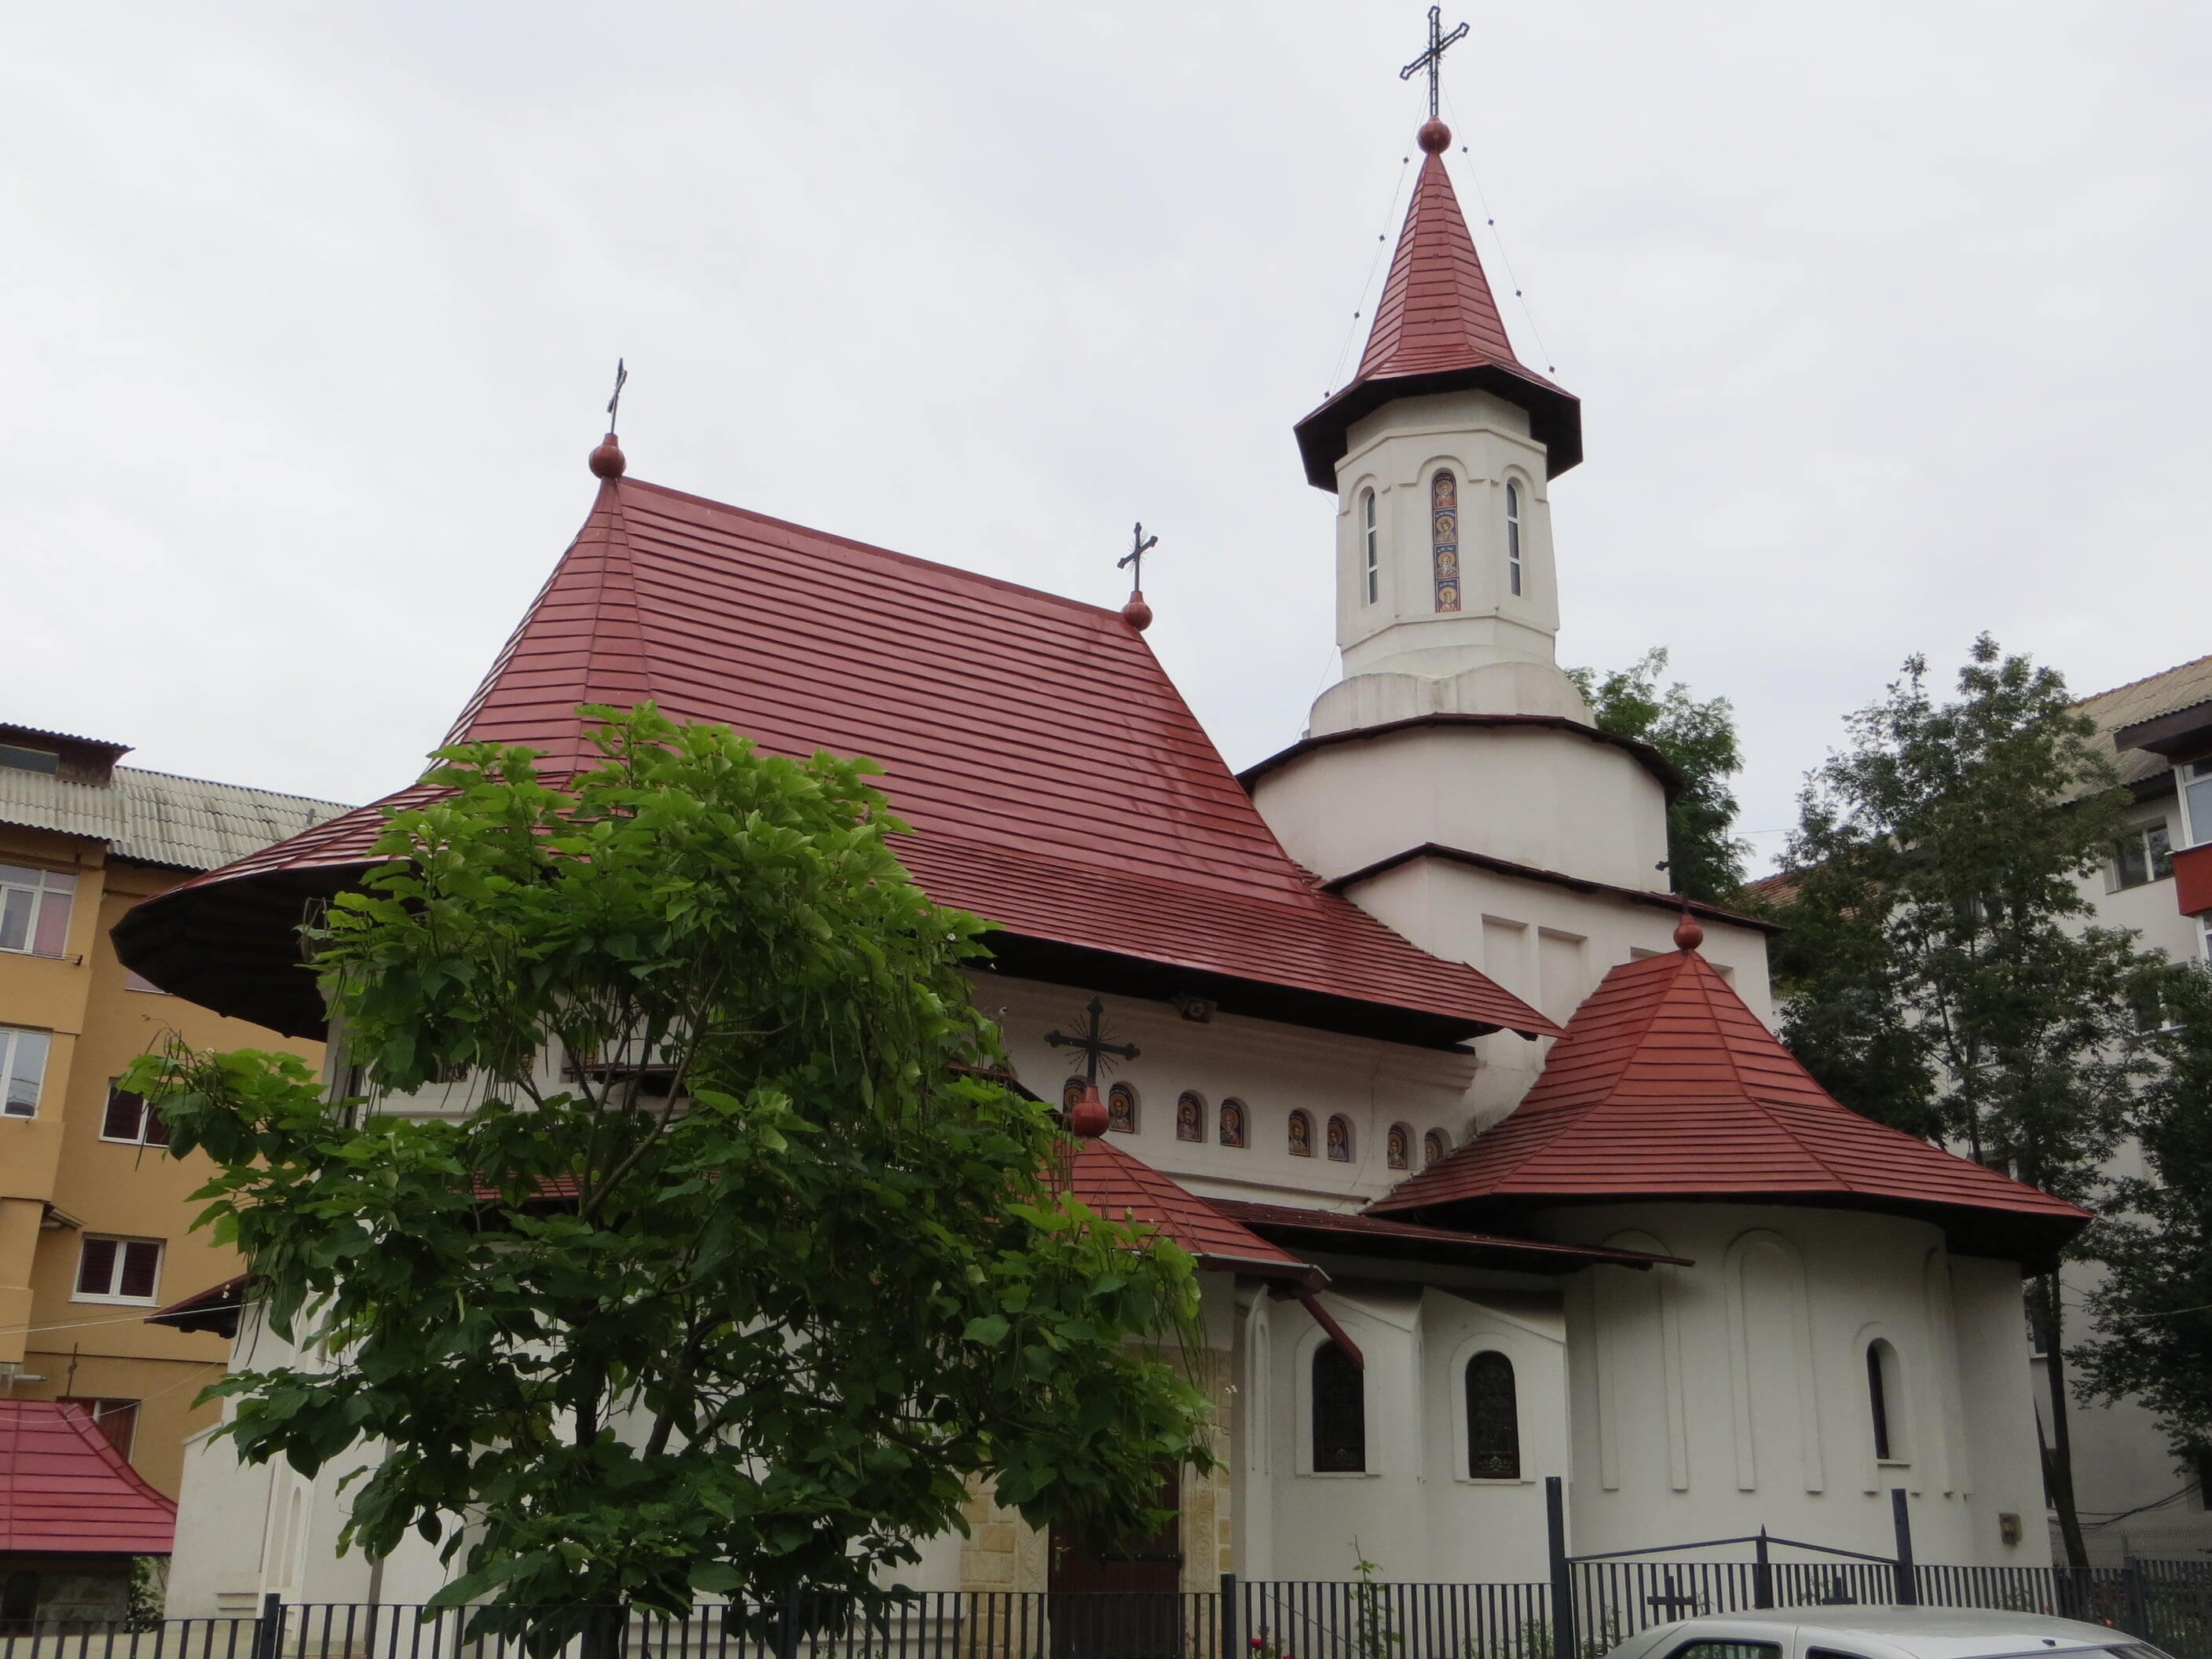 Suceava - Church of Saint Menas-Obcini in Suceava.